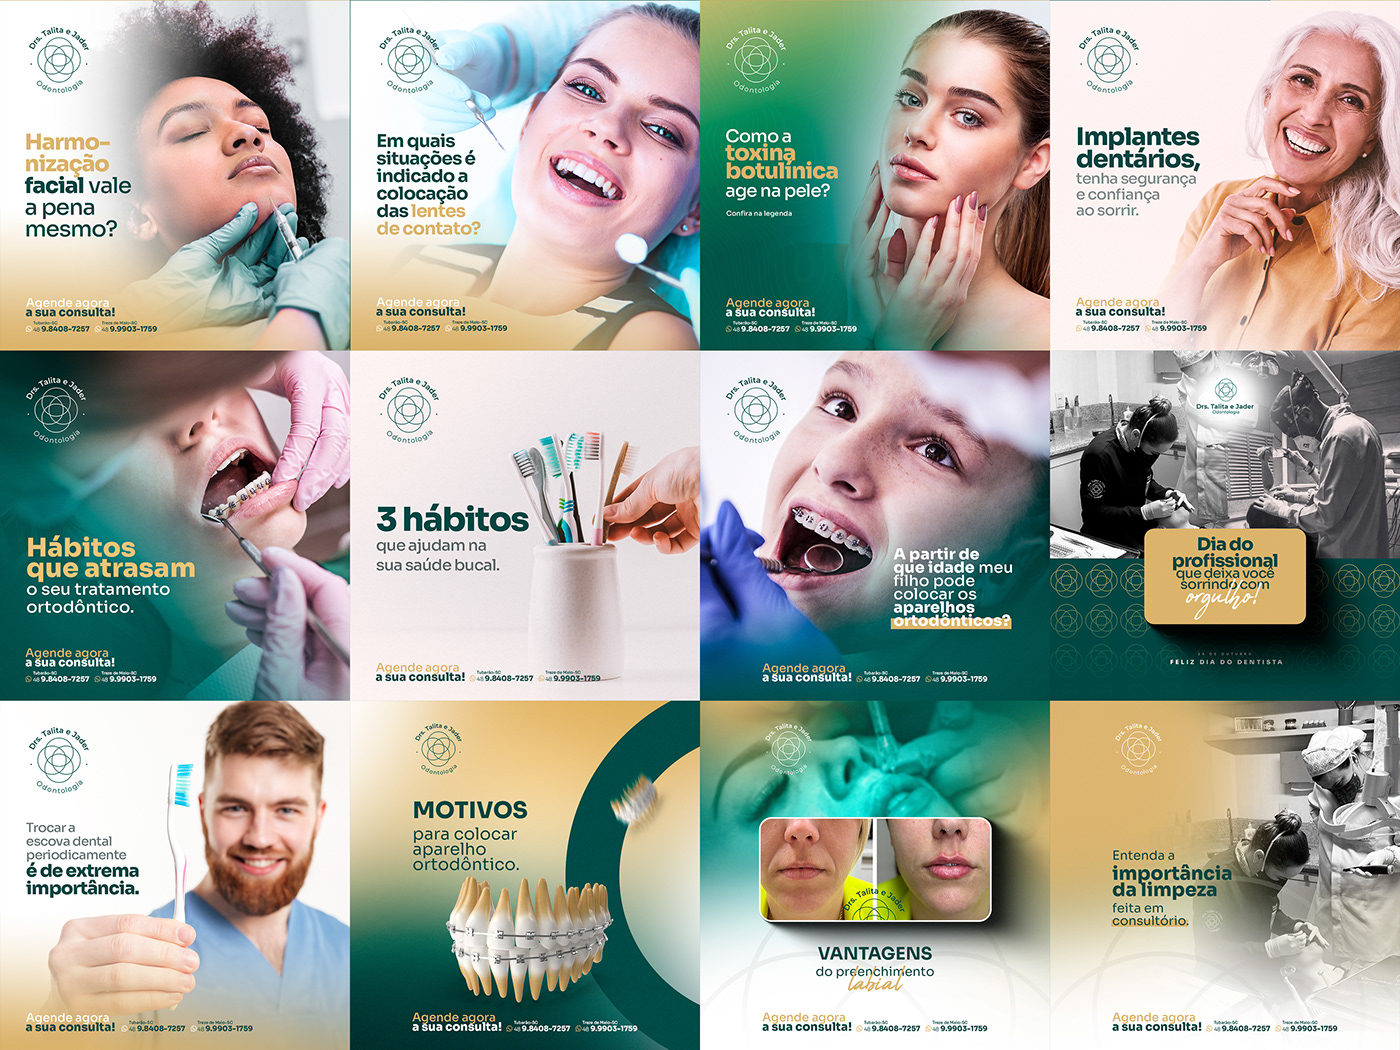 criativos Social media post Socialmedia post design gráfico Odontologia dentista clinica estética saúde